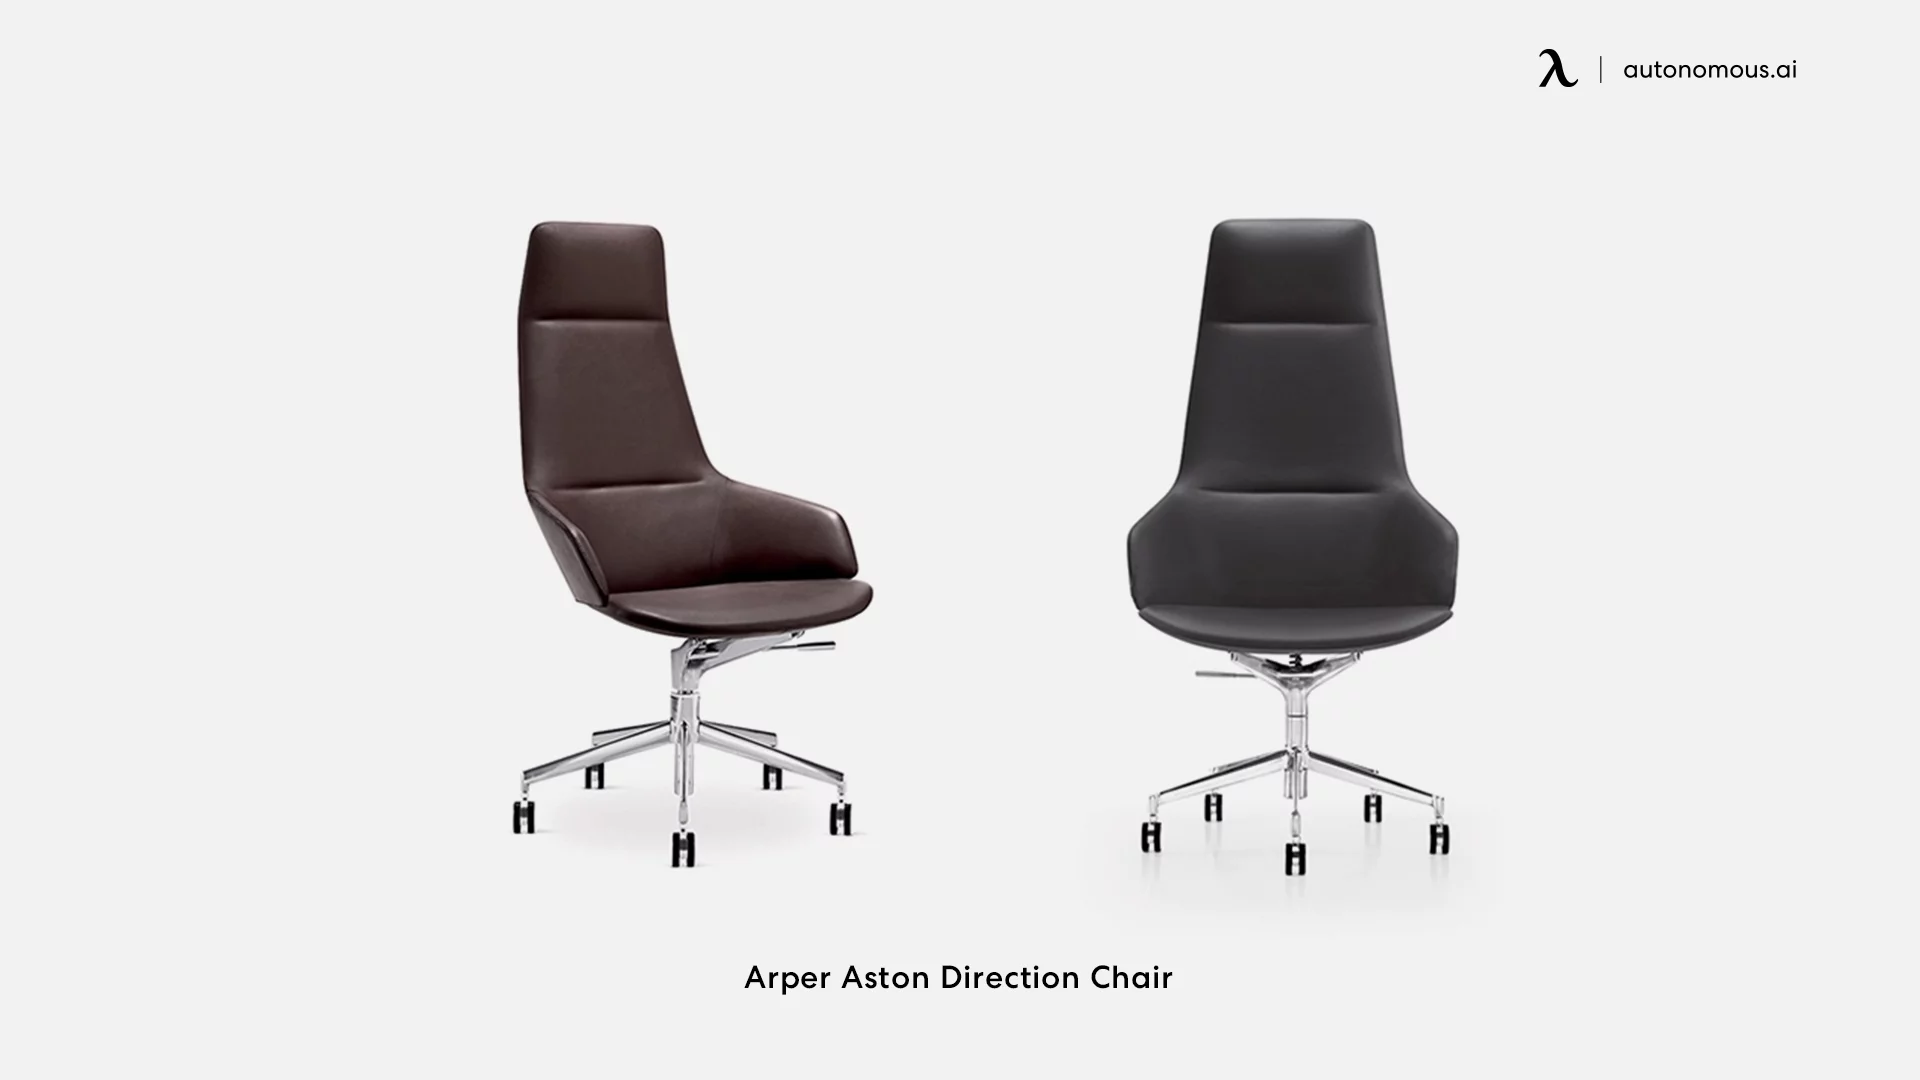 Arper Aston Direction Chair